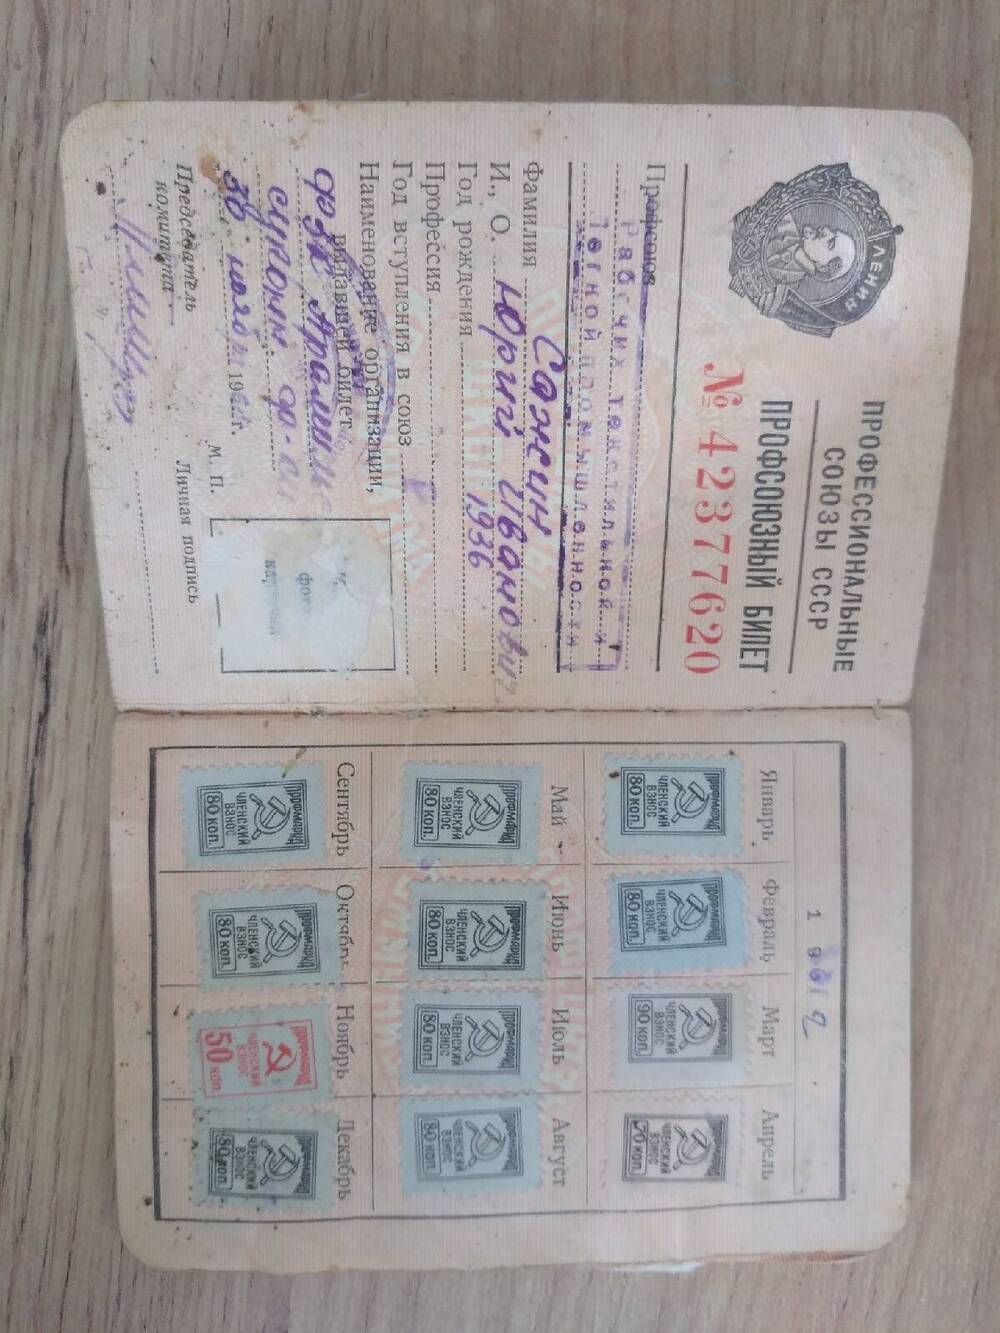 Профсоюзный билет Сажина Юрия Ивановича. №42377620 от 30.11.1961г.